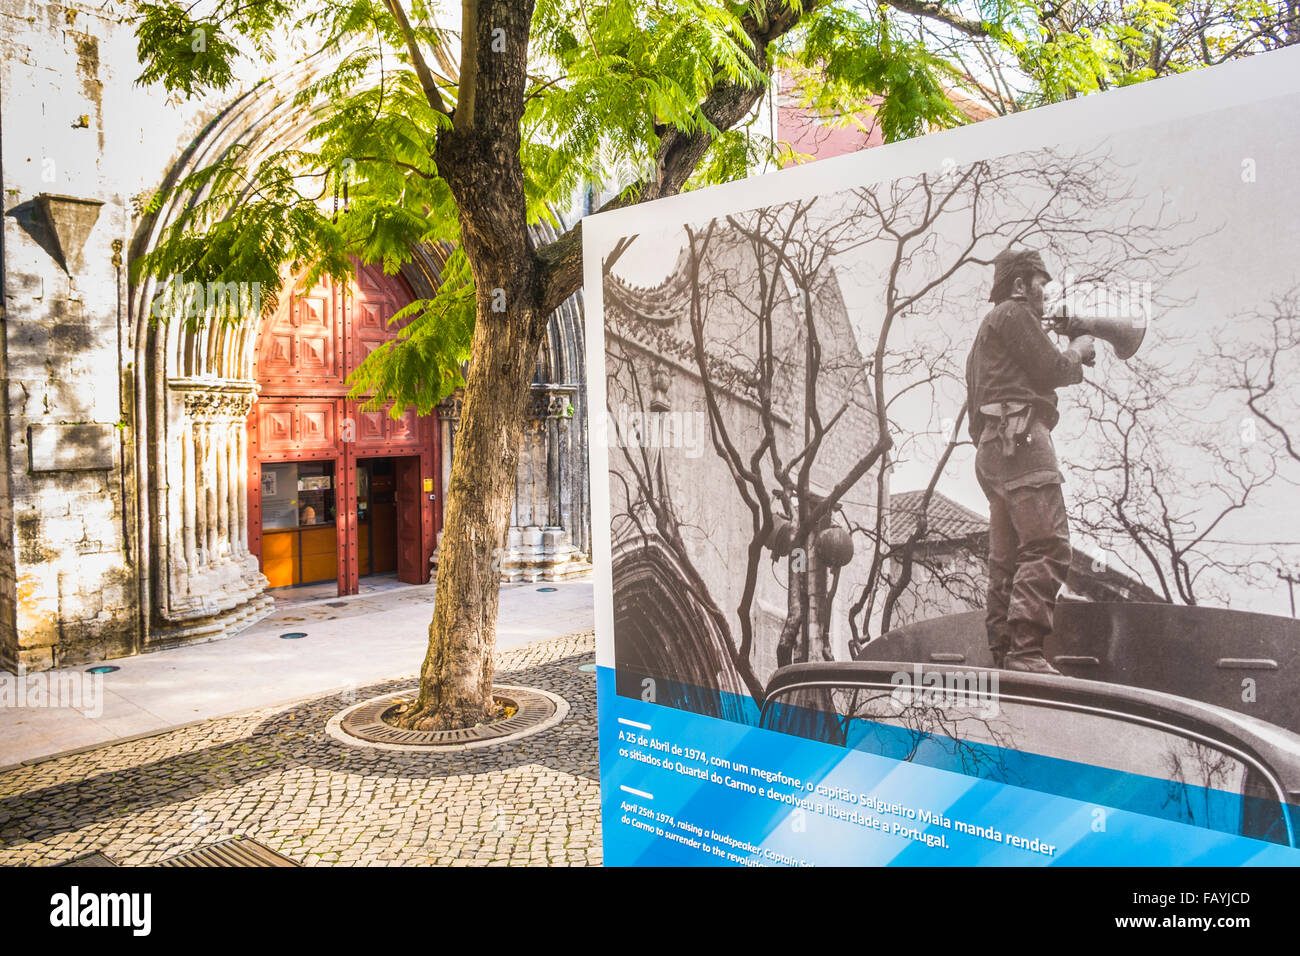 Affiche montrant une photographie historique du capitaine Fernando salgueiro maia au cours de la révolution des œillets Banque D'Images